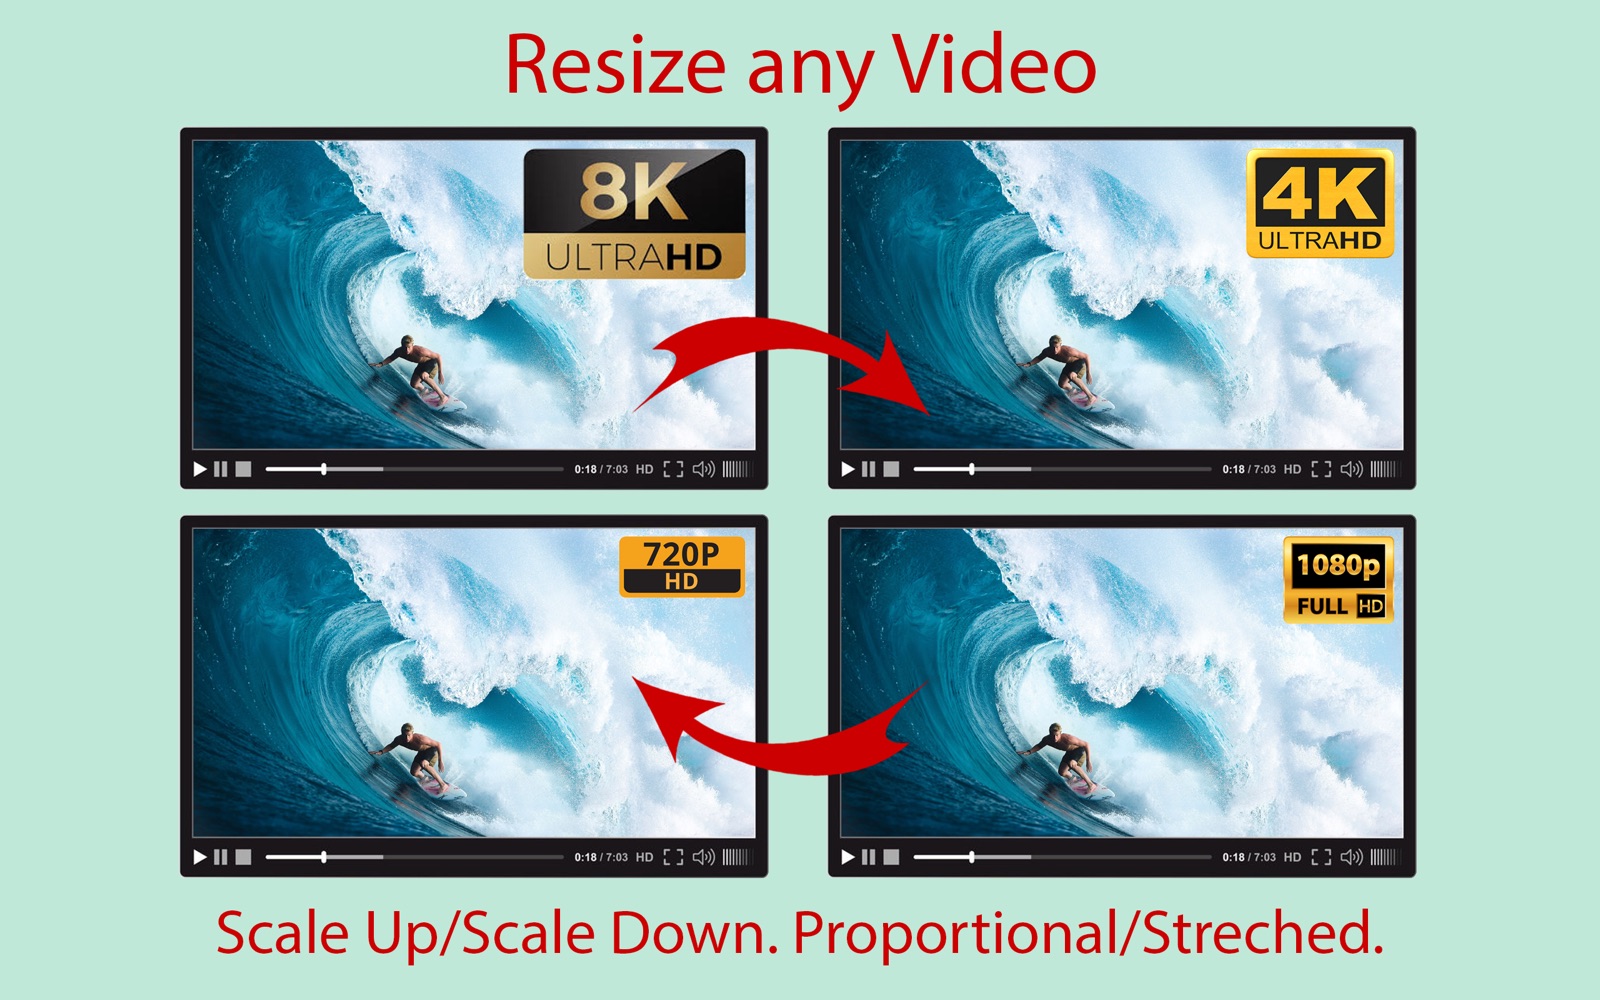 Resize Any Video 2.0 : Main Window